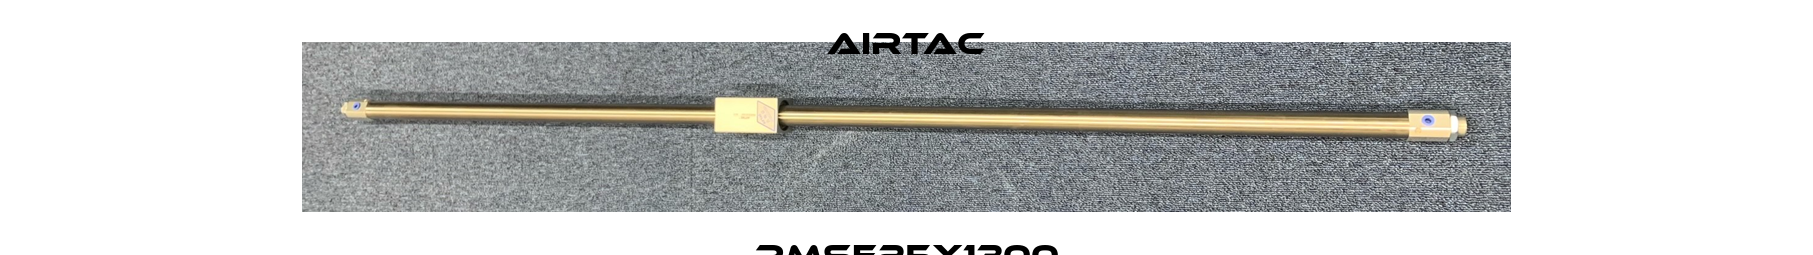 RMSF25X1300 Airtac